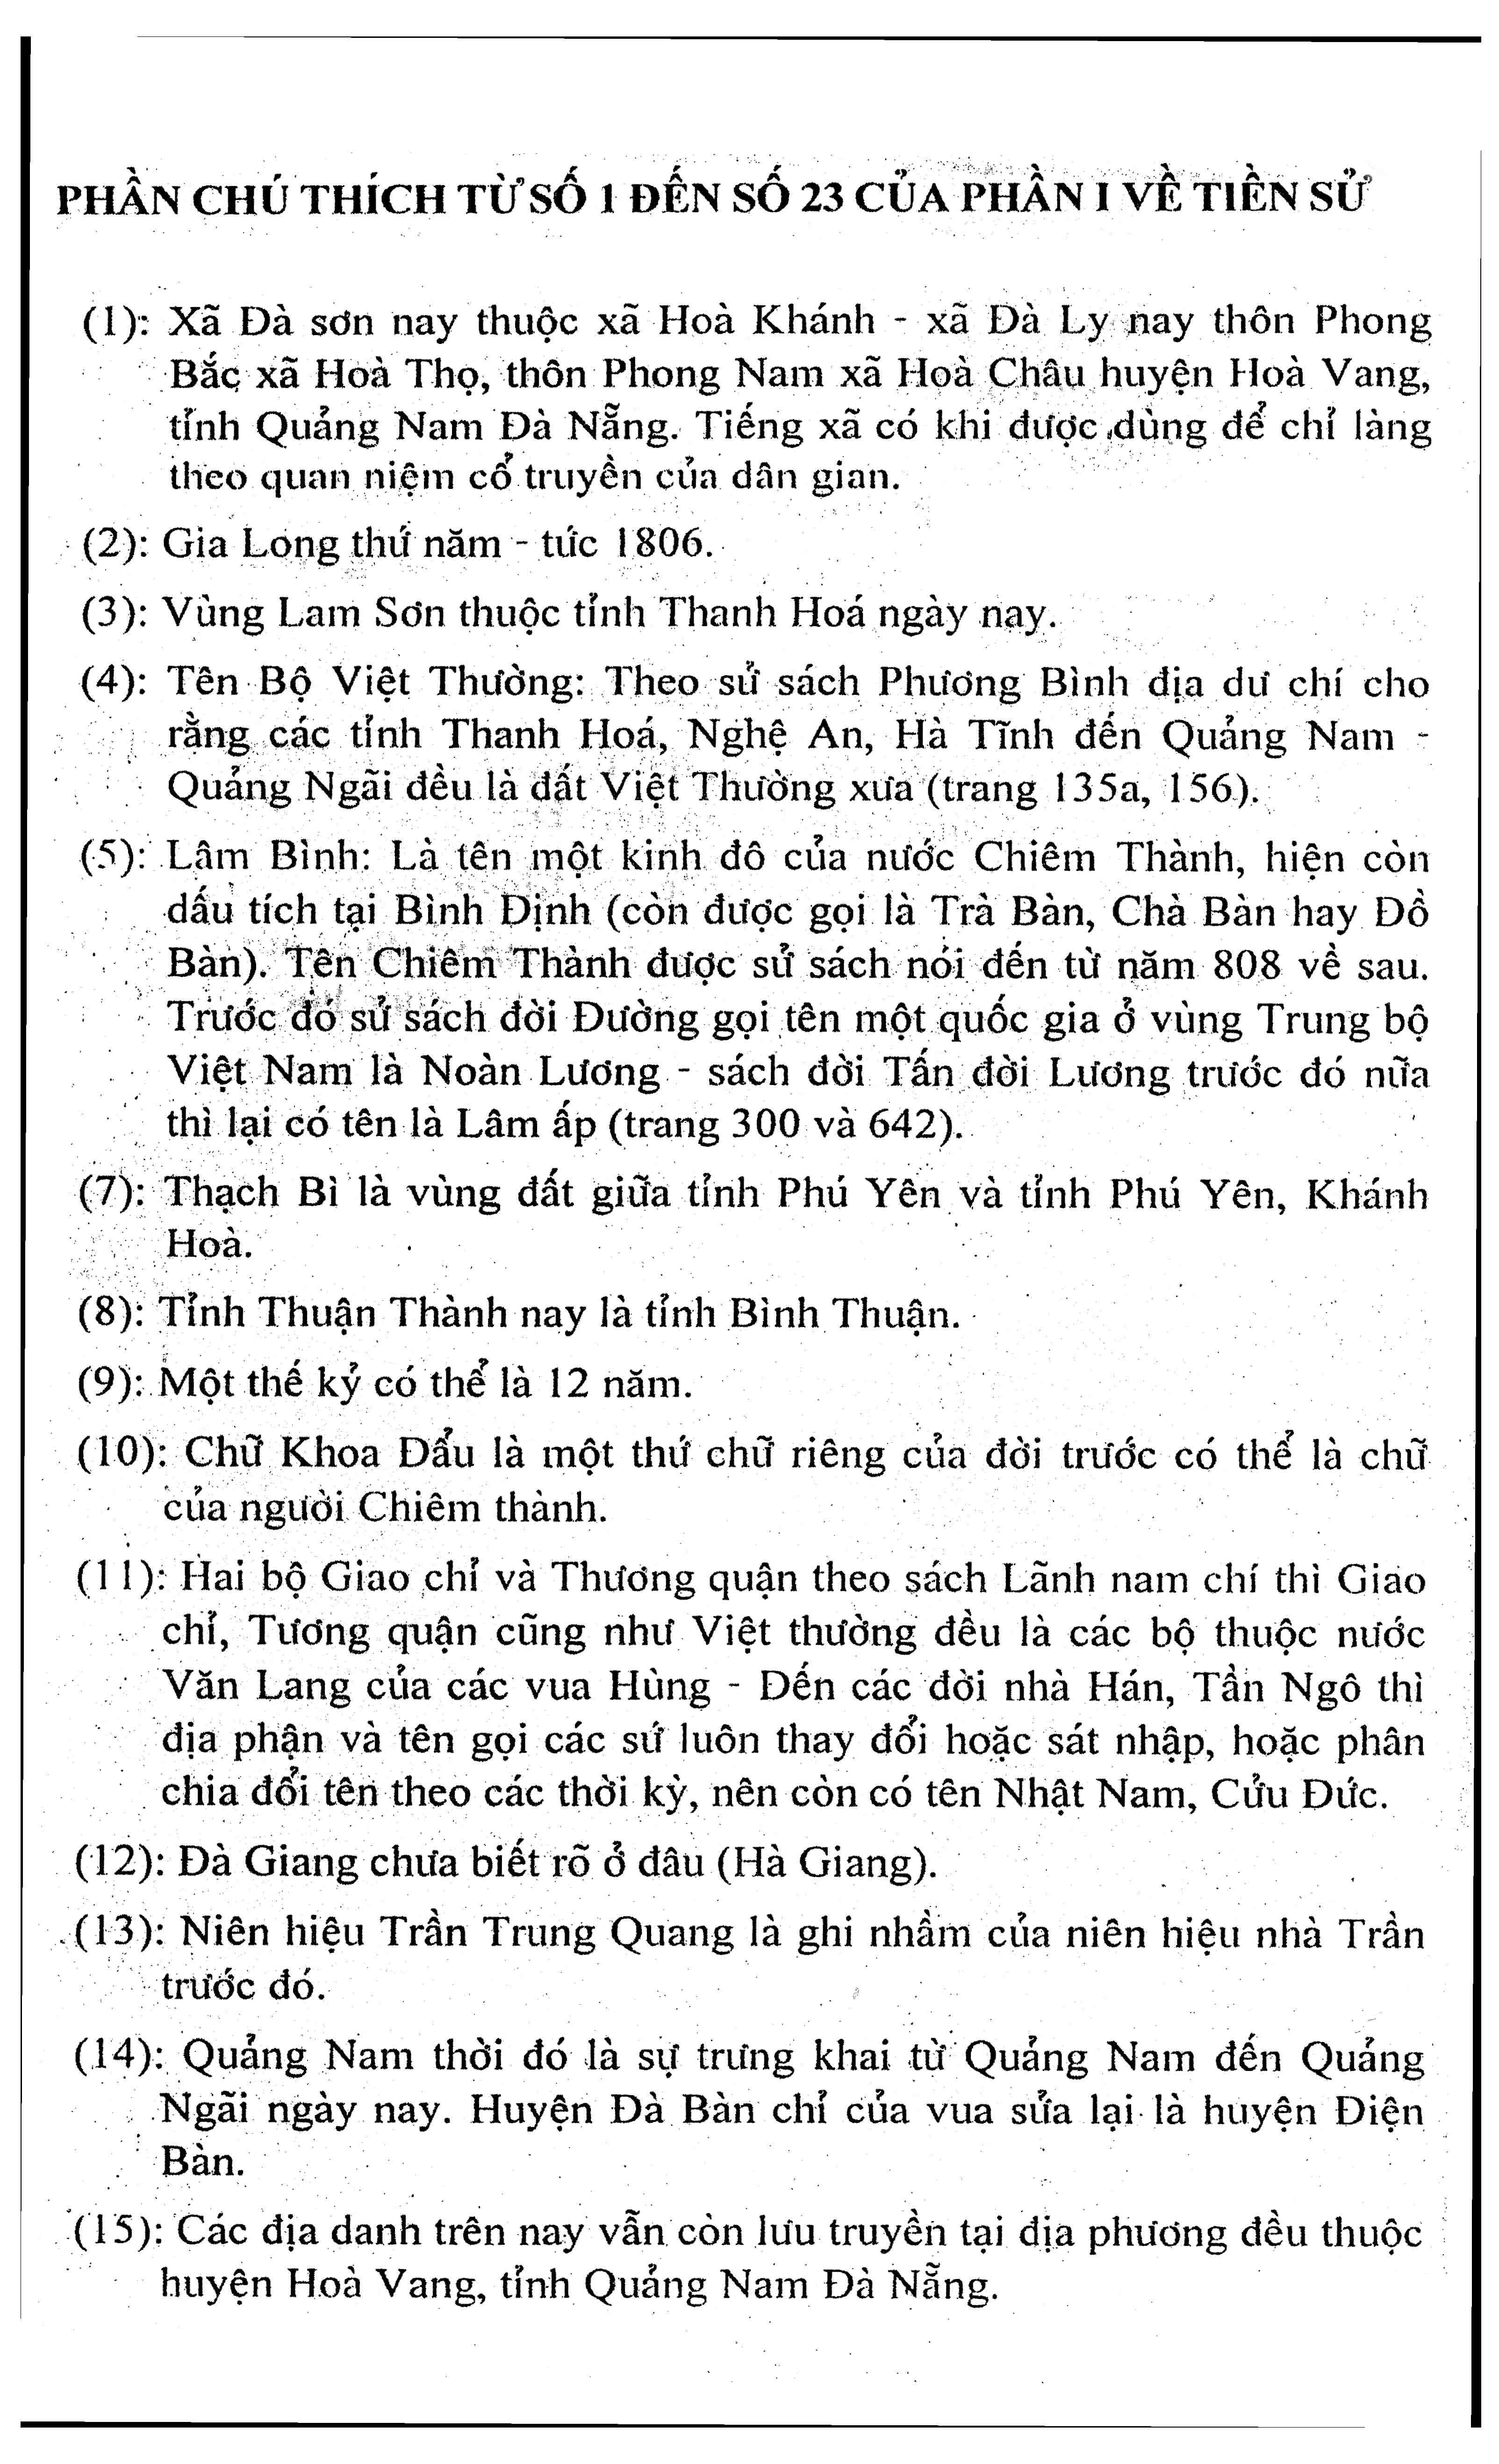 9 - Miền tháp cổ - Tác giả Vũ Hùng - Kỳ 10 - Phan tộc phổ chí Đà Sơn - Đà Ly nhị xã